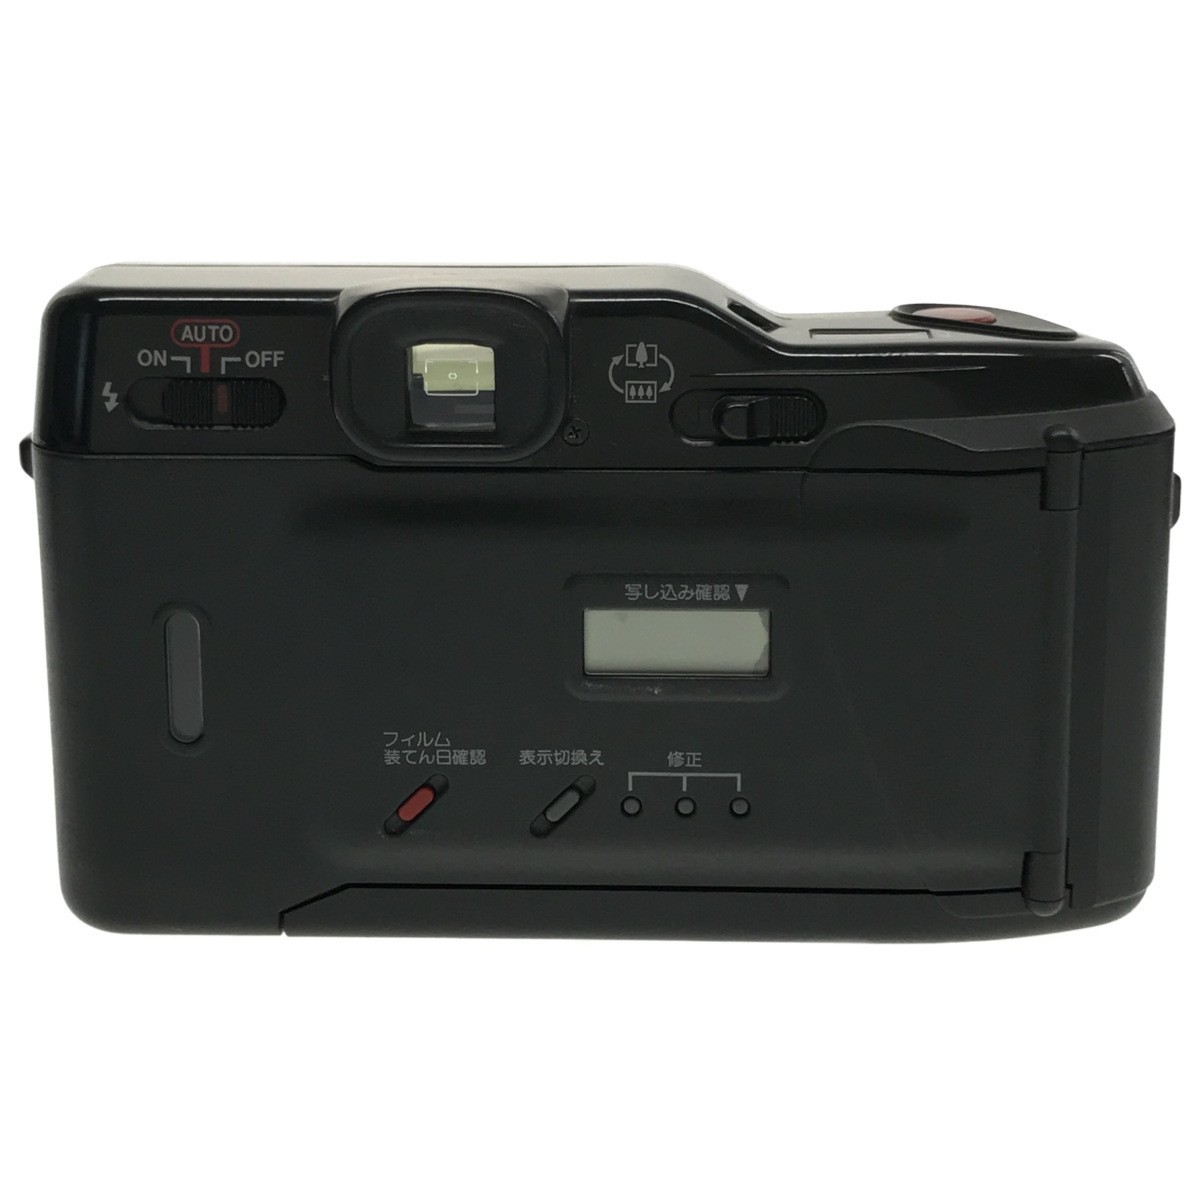 【通電確認済み 3台まとめ】Canon AF35ML + Autoboy 3 + TELE QUARTZ DATE キャノン オートボーイ コンパクトフィルムカメラ 現状品 C3000の画像5